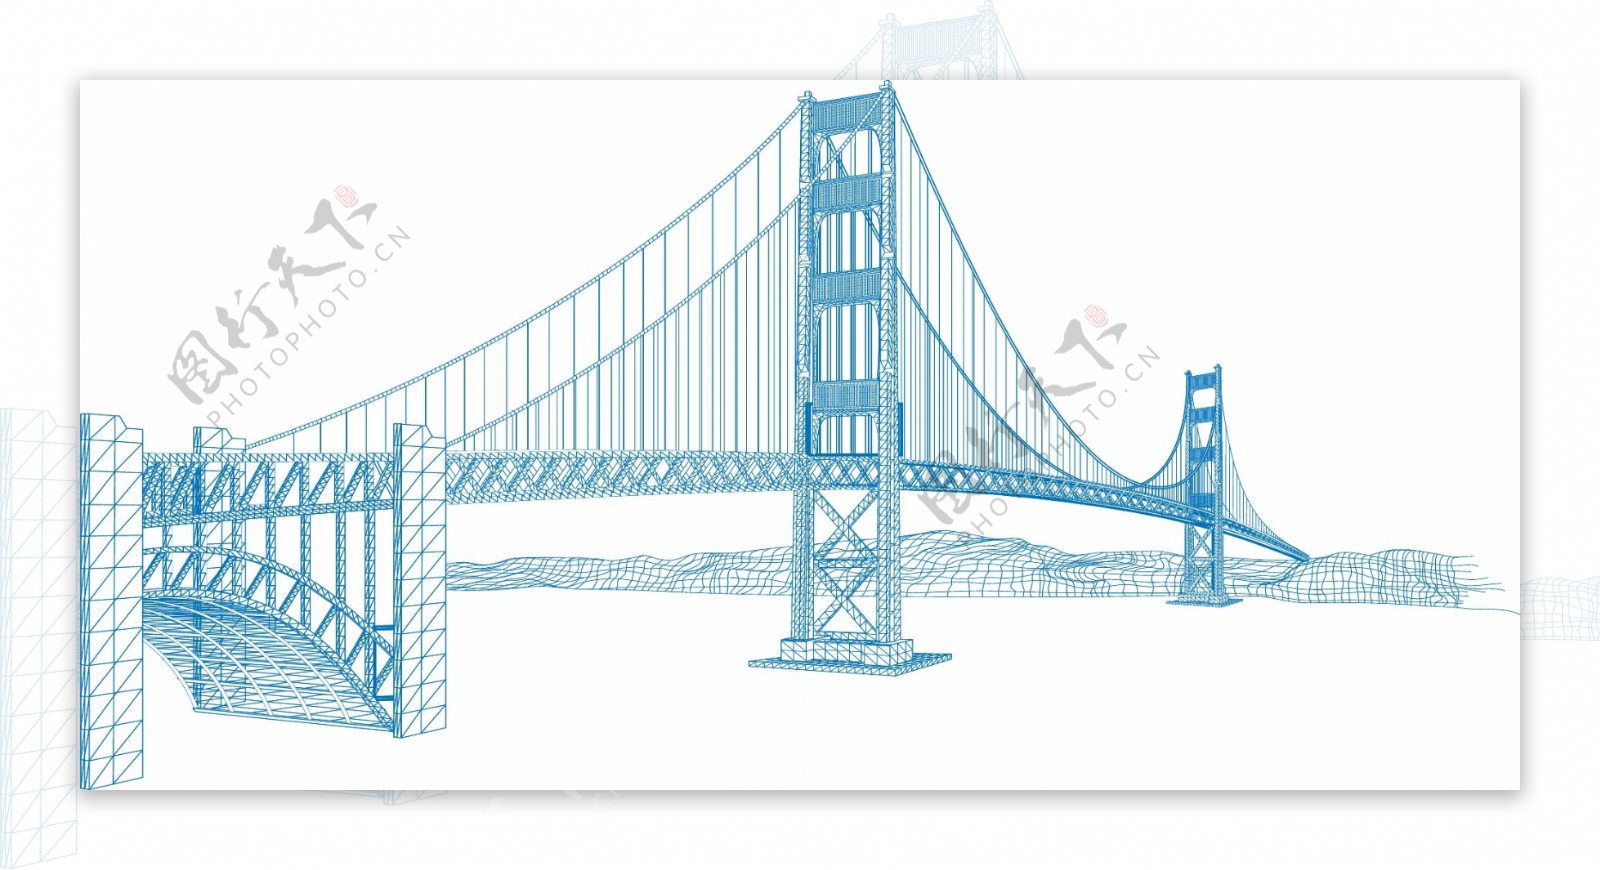 矢量蓝大桥吊桥设计素材设计元素